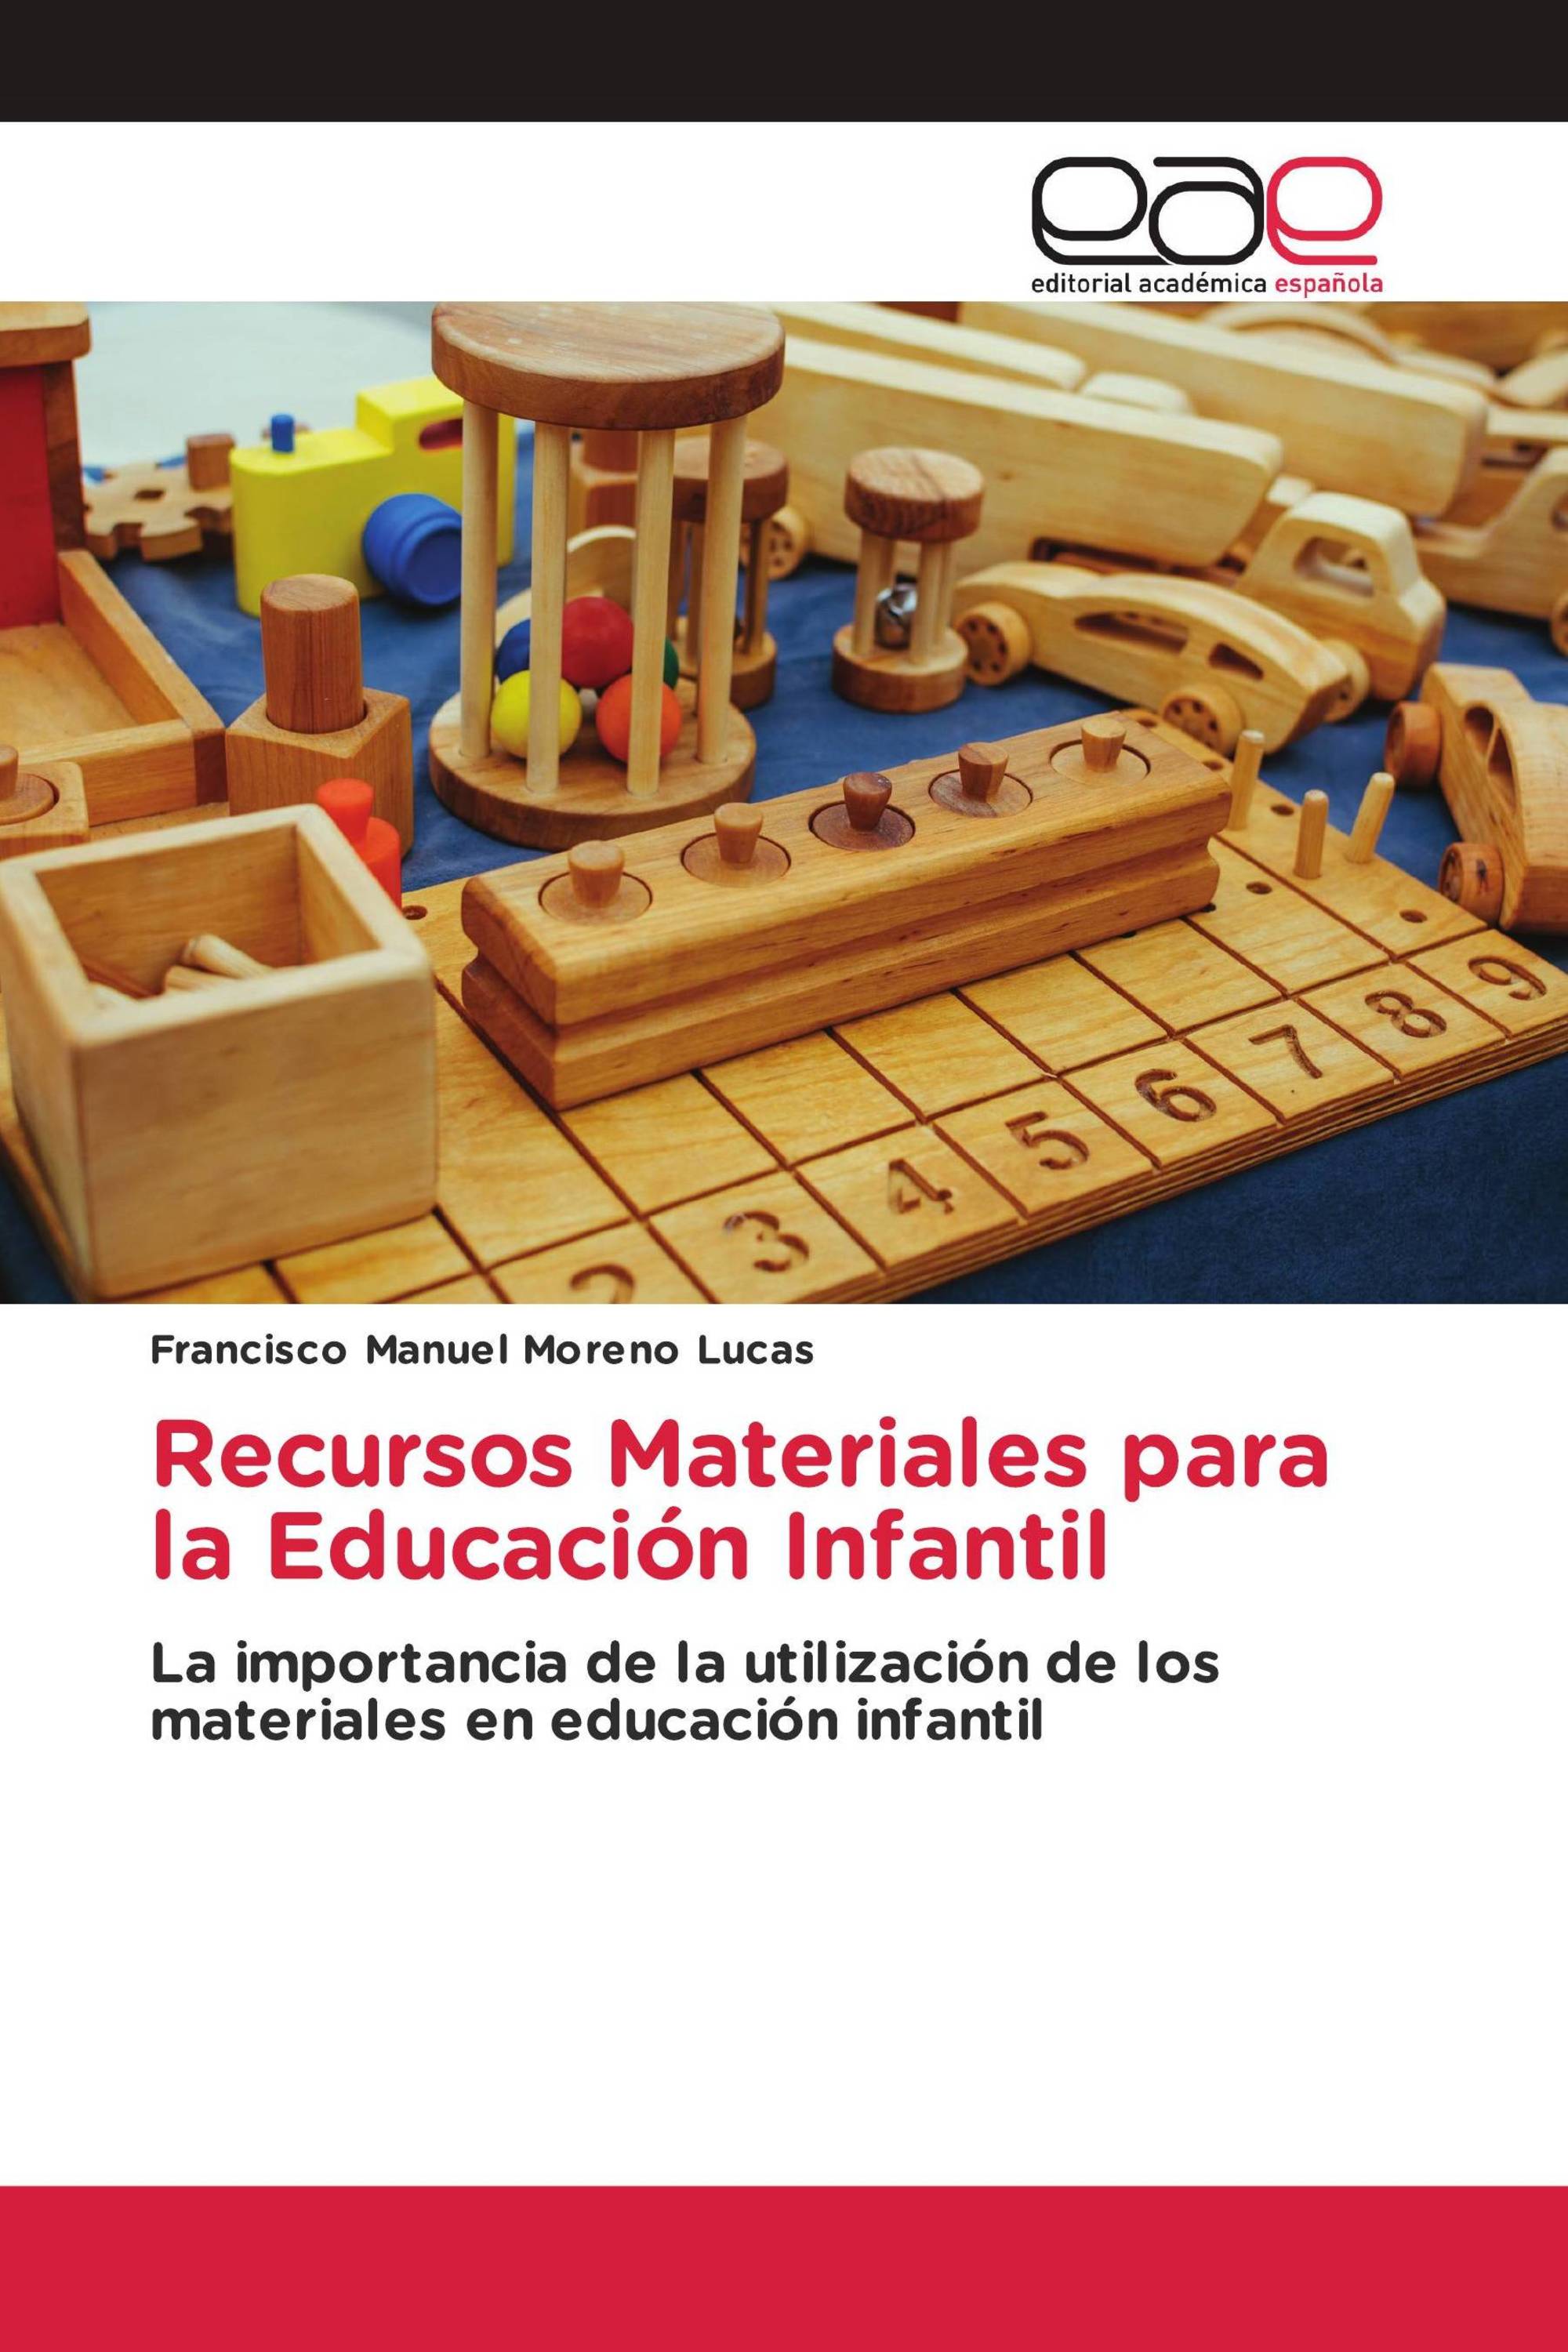 Imagen de portada del libro Recursos Materiales para la Educación Infantil